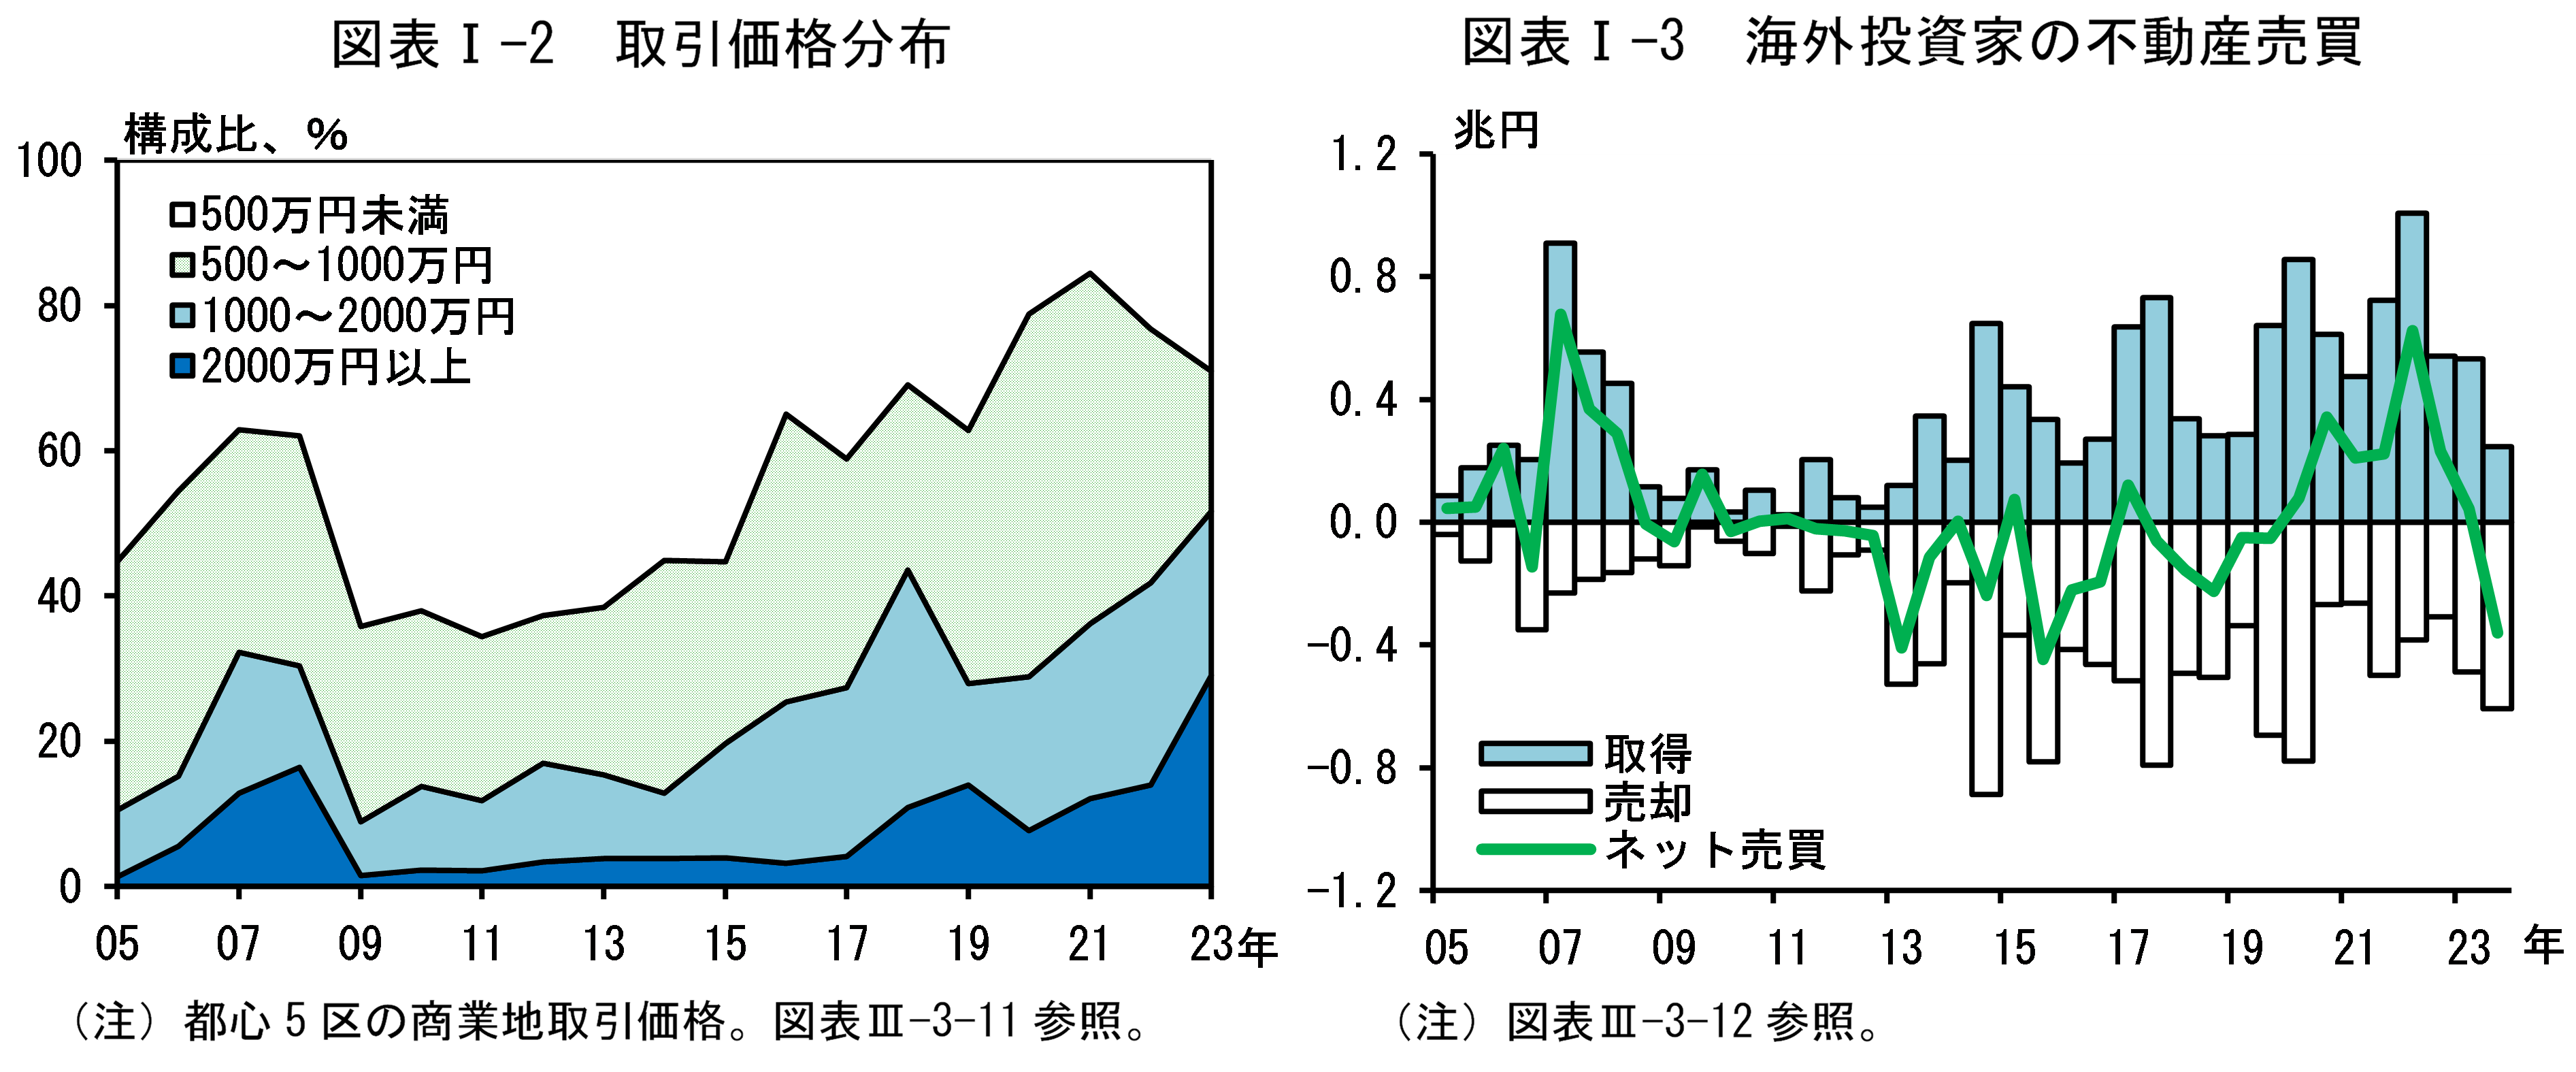 図表Iの2は「取引価格分布」、図表Iの3は「海外投資家の不動産売買」です。